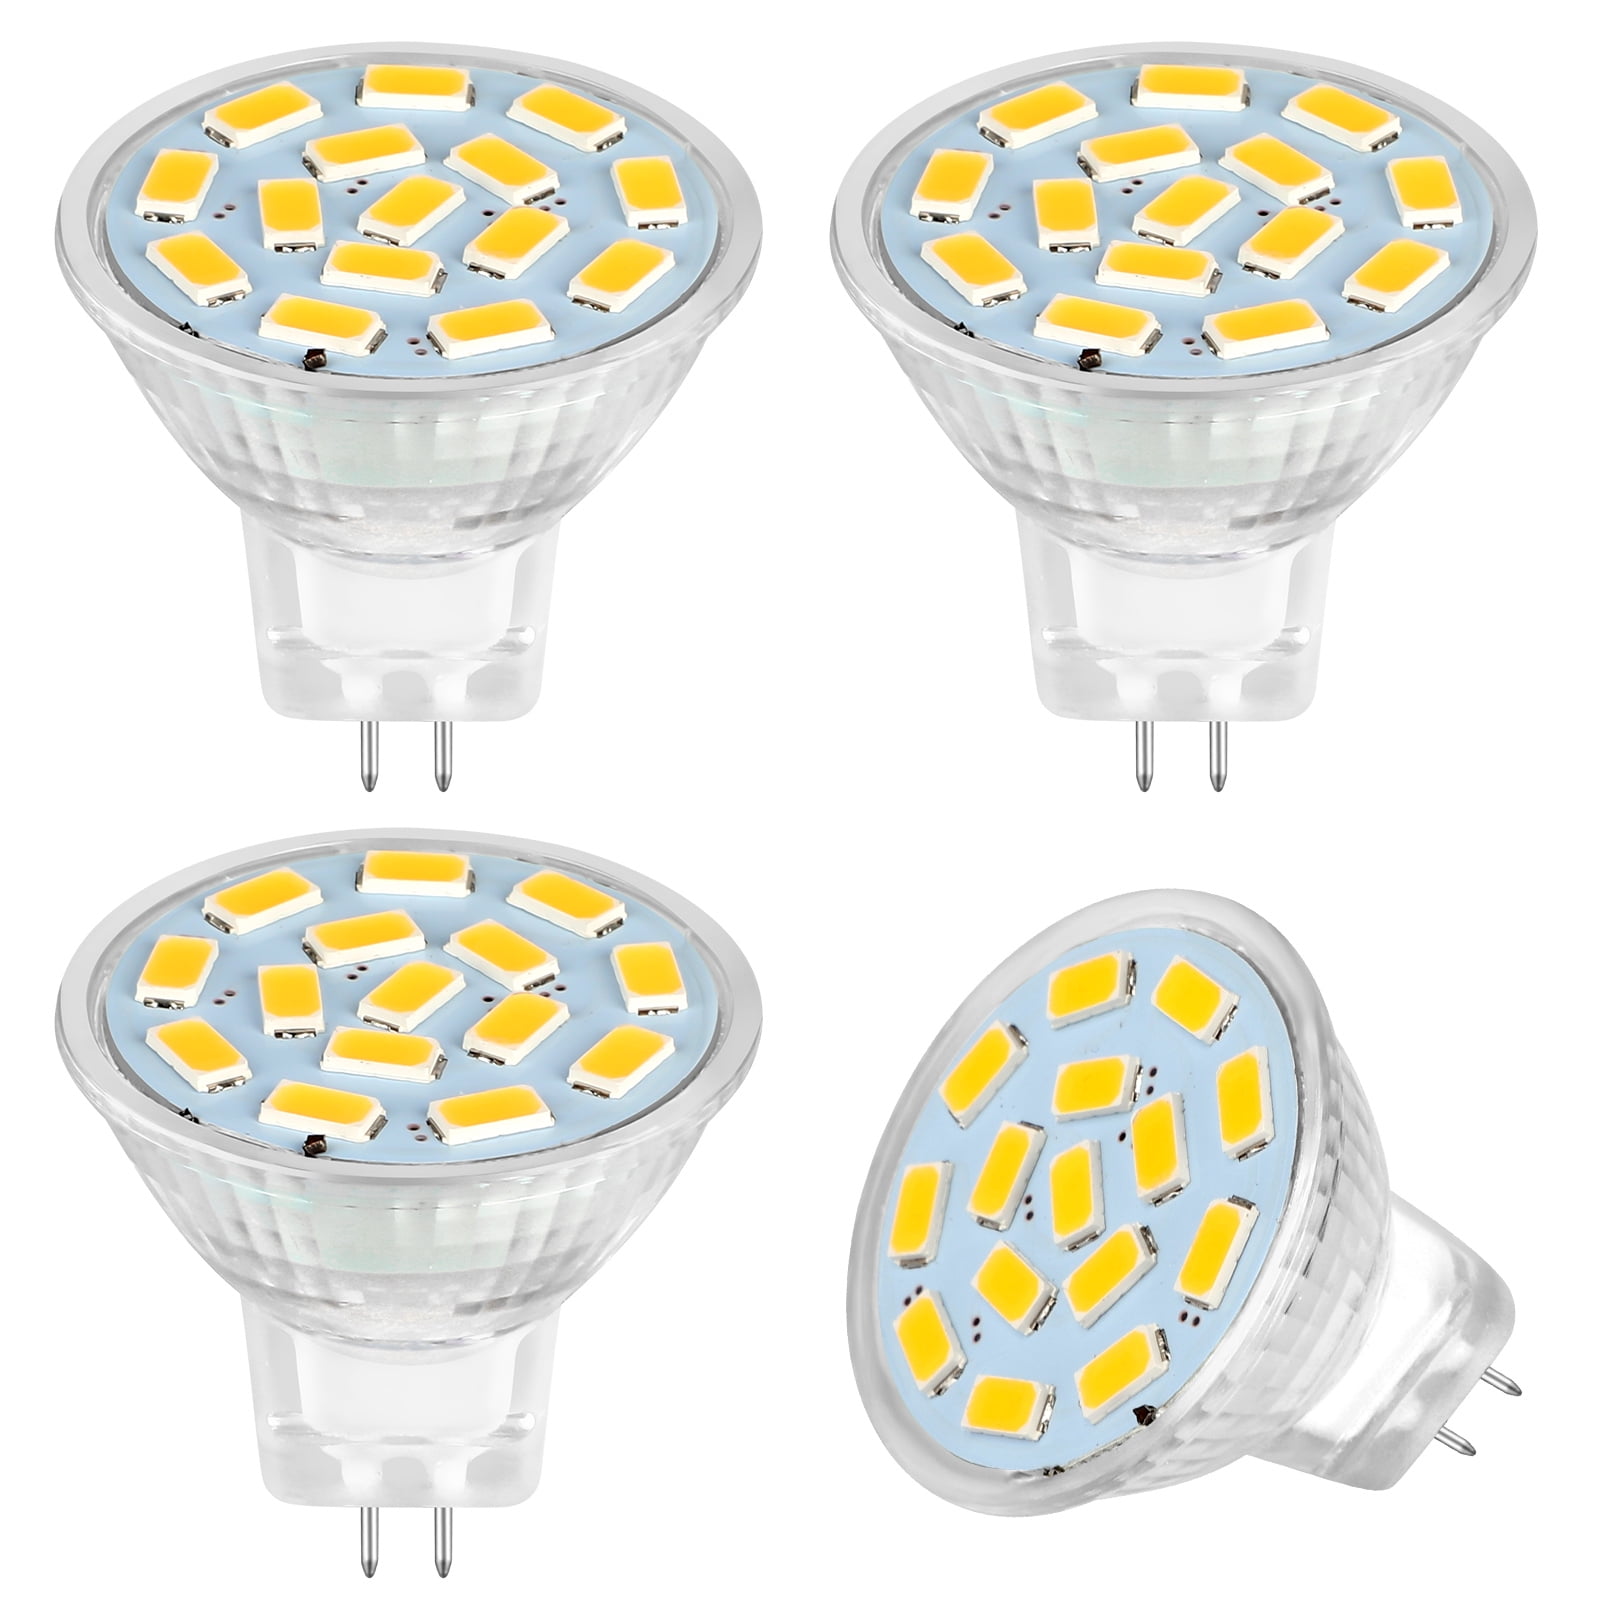 Immuniteit meten uitbreiden 4pcs LED MR11 Light Bulbs, EEEkit 3W 12V LED MR11 Flood Light Bulbs  Equivalent to 20W Halogen Bulbs, GU4 Bi-Pin Base for Landscape Accent  Lighting, 3000K Soft White - Walmart.com